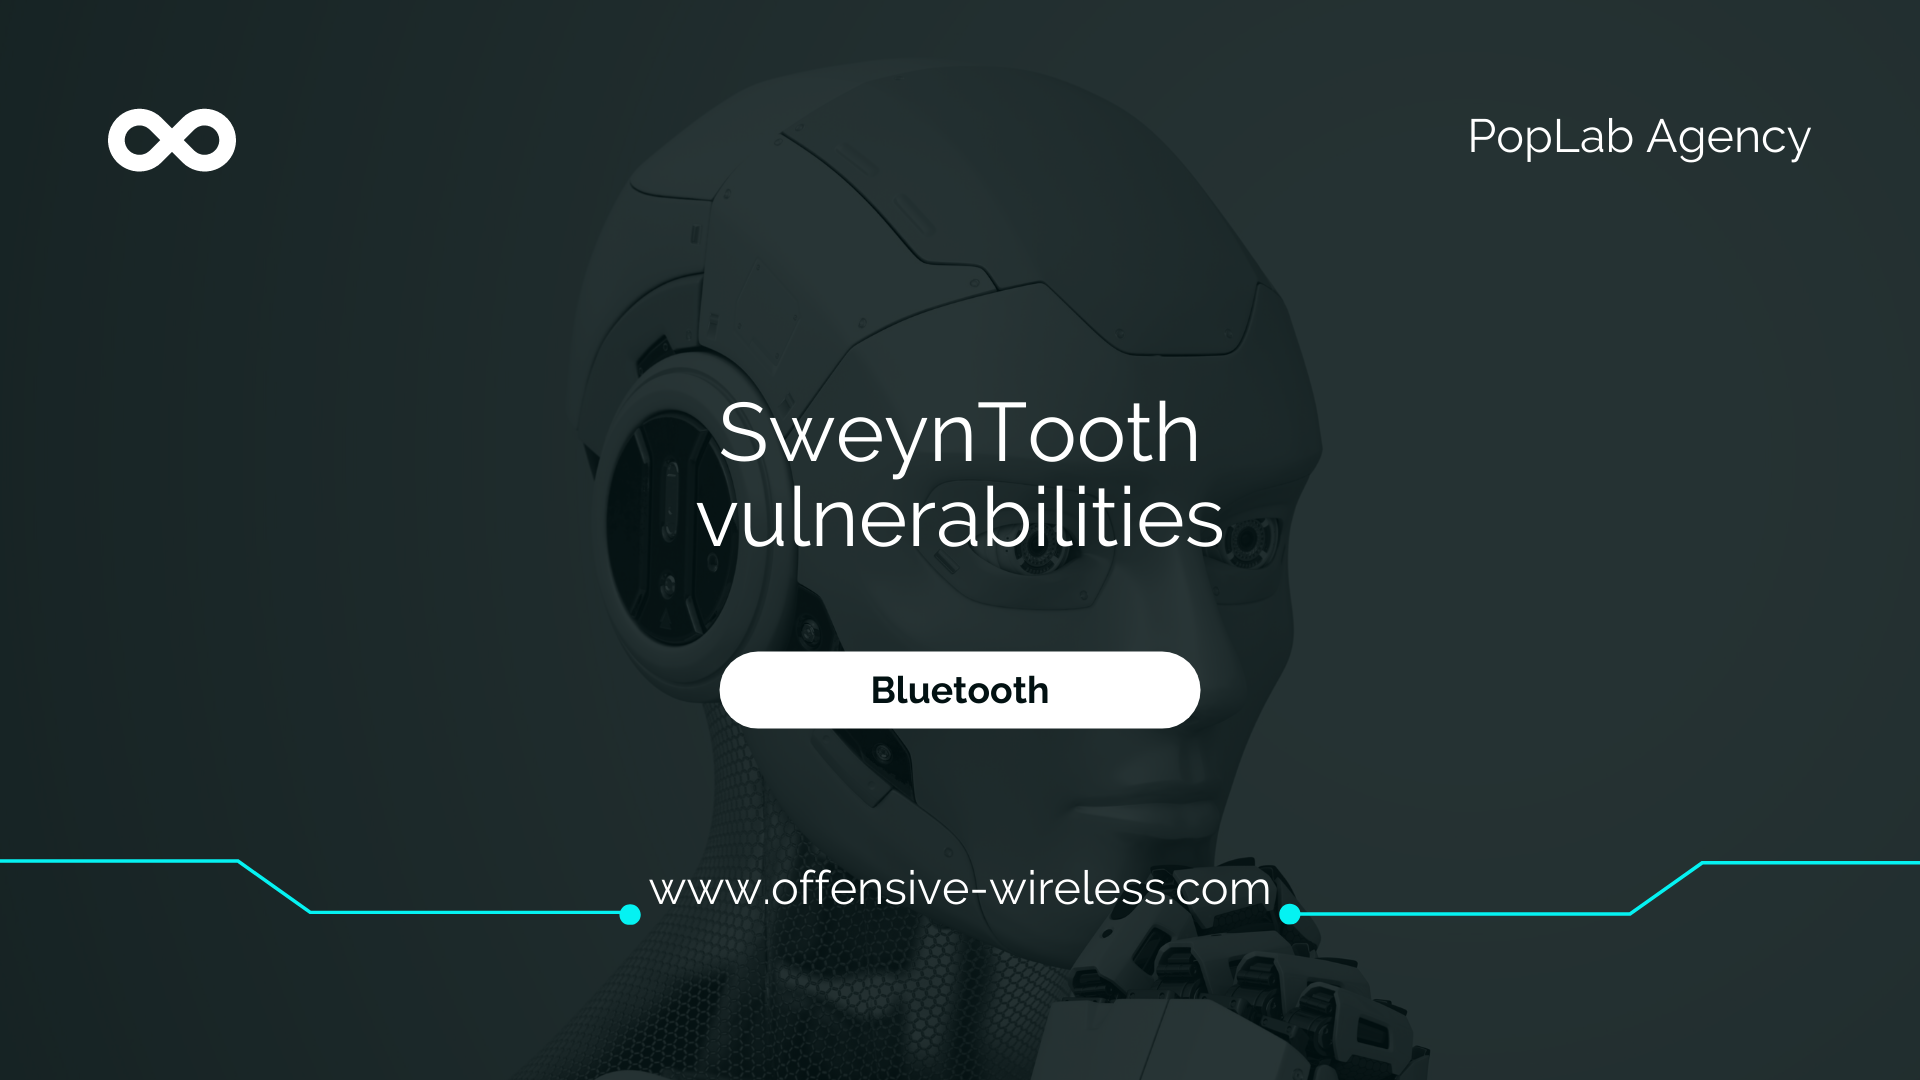 SweynTooth vulnerabilities